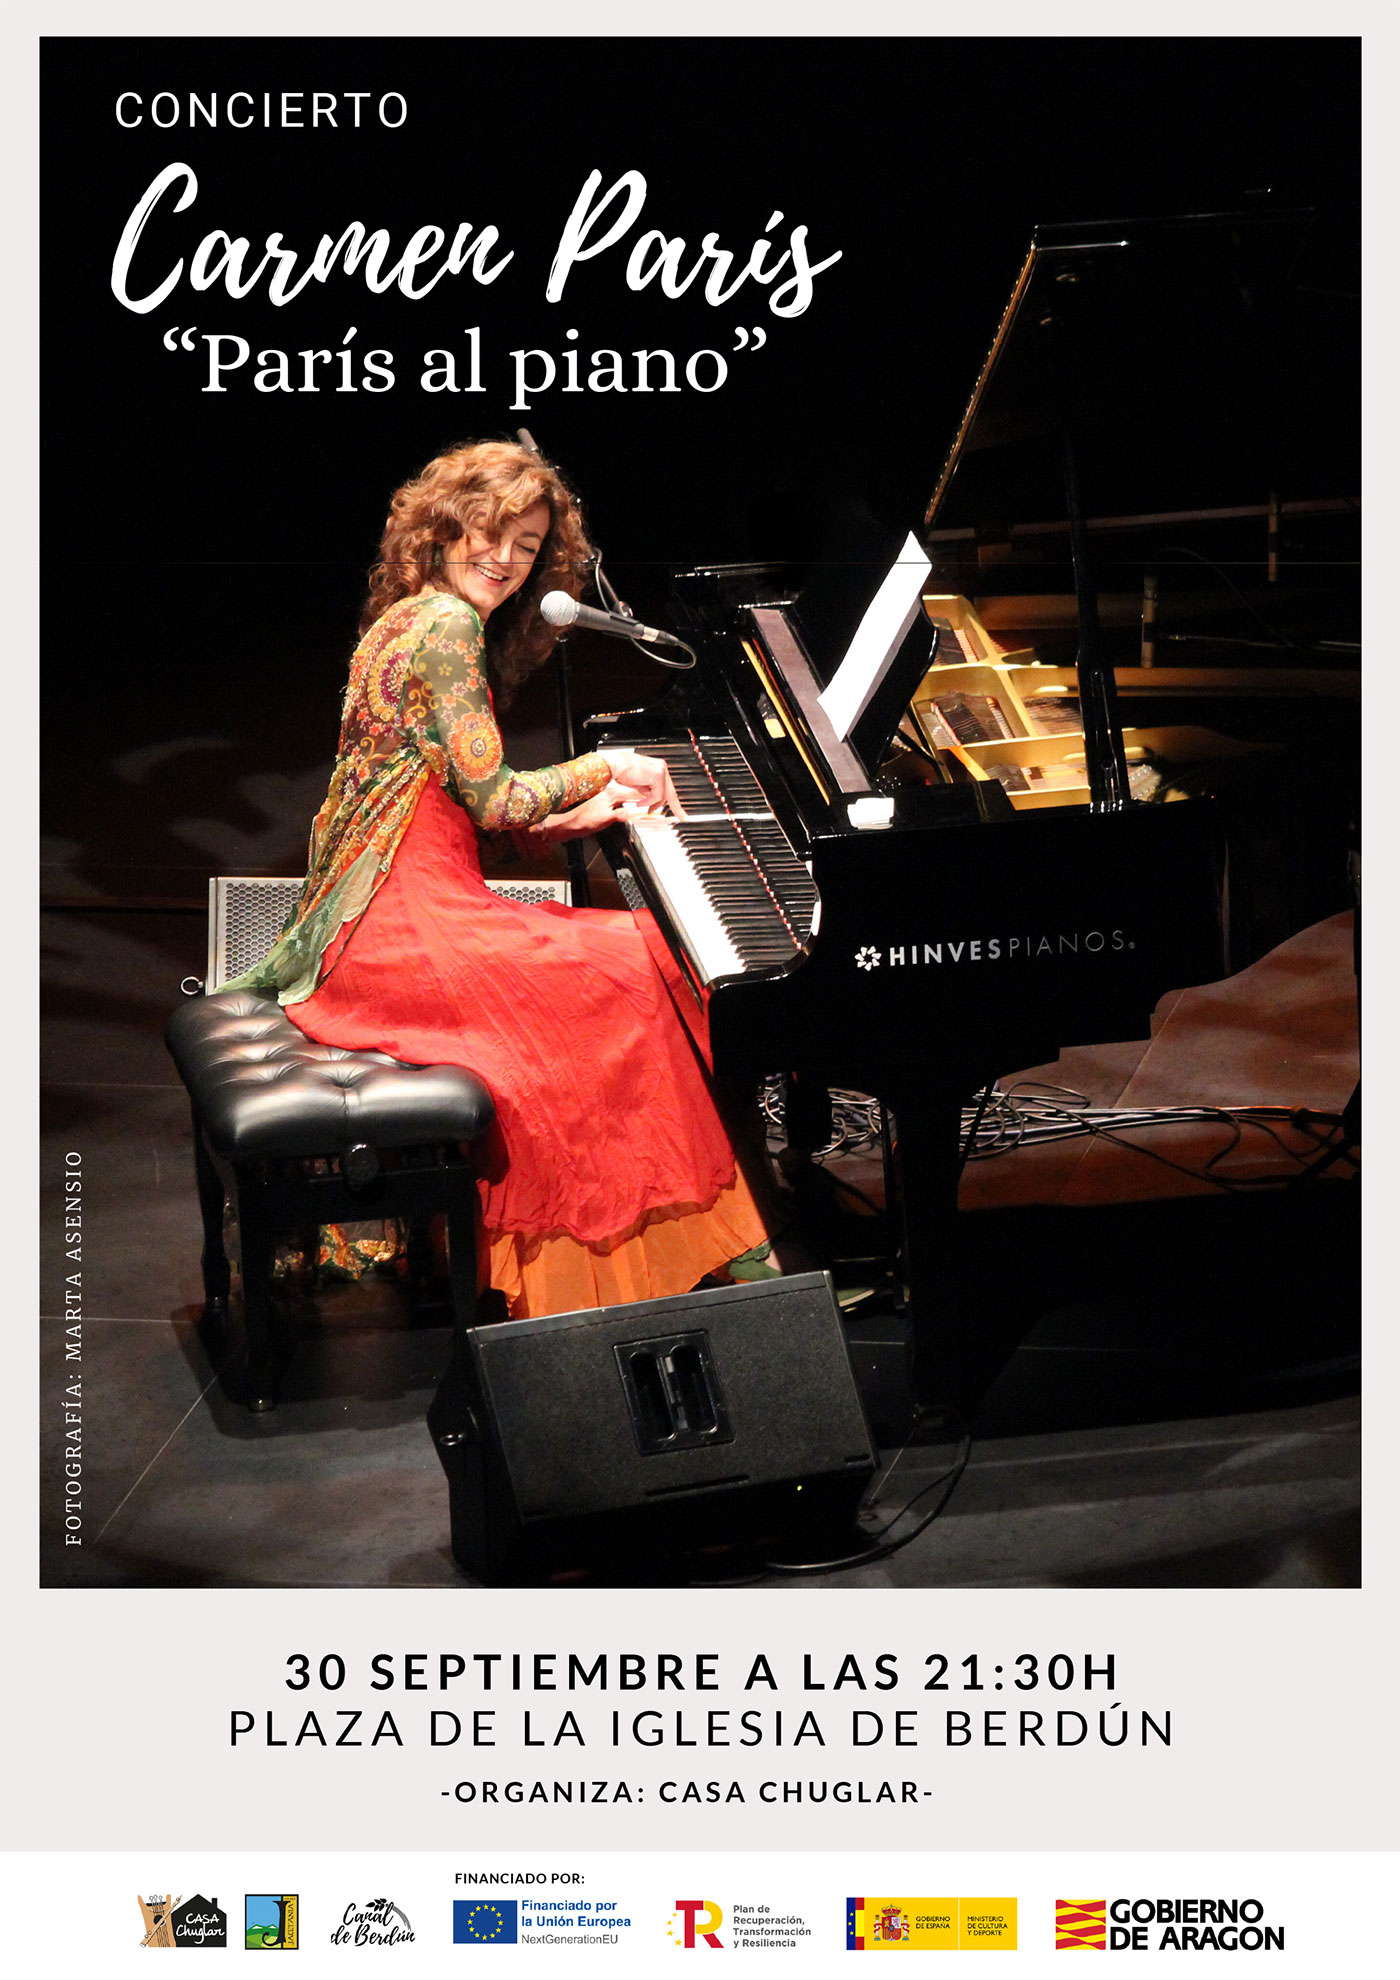 30 septiembre Concierto de Carmen París “París al piano”. 21:30 Plaza de la Iglesia de Berdún